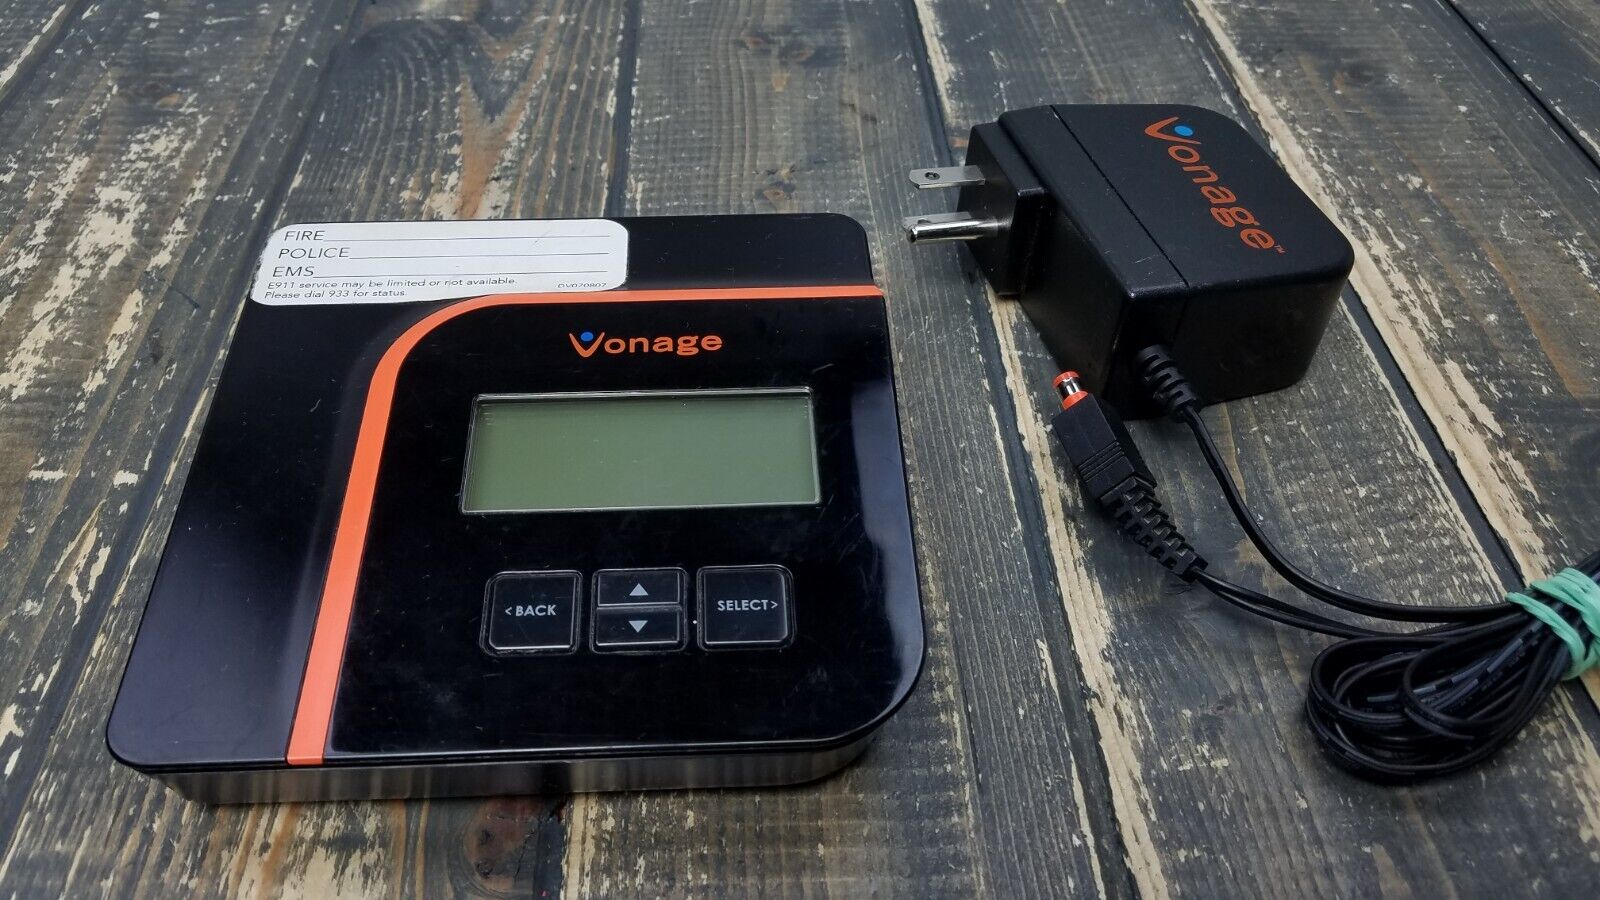 Vonage VDV21-VD Black Digital V-Portal Phone Service Adapter Internet Router